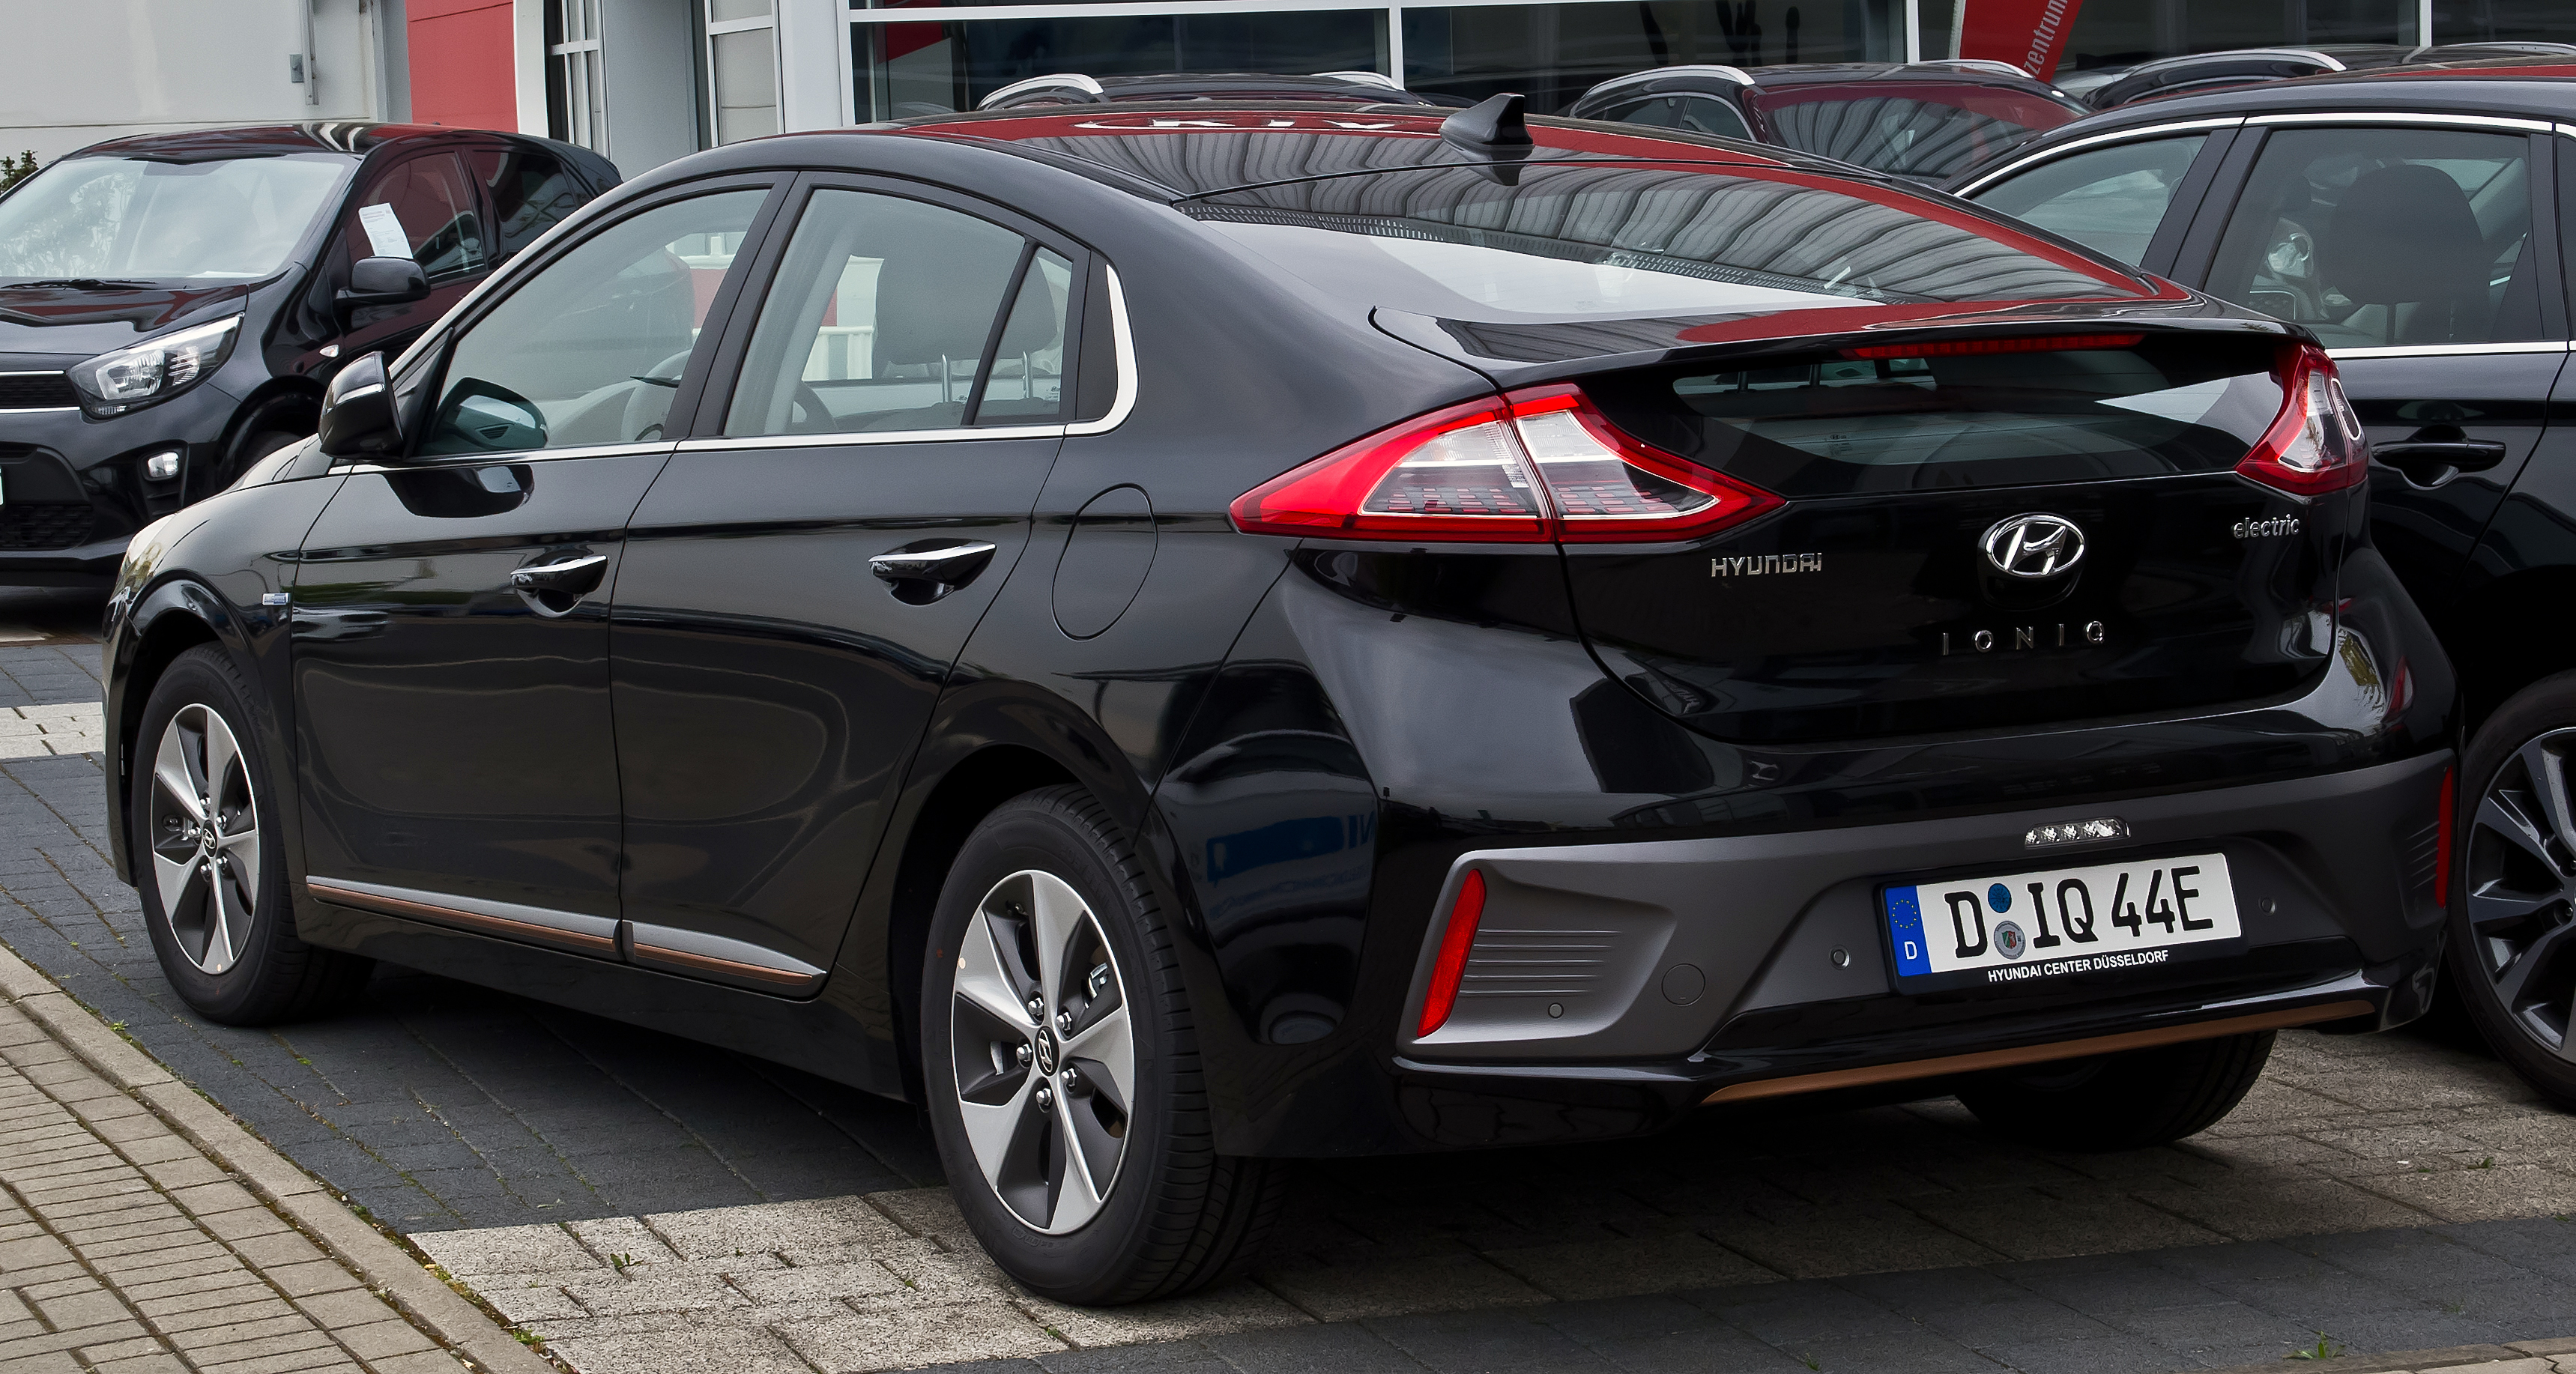 gewoon Zelden Einde File:Hyundai IONIQ electric Premium – Heckansicht, 7. Mai 2017,  Düsseldorf.jpg - Wikimedia Commons